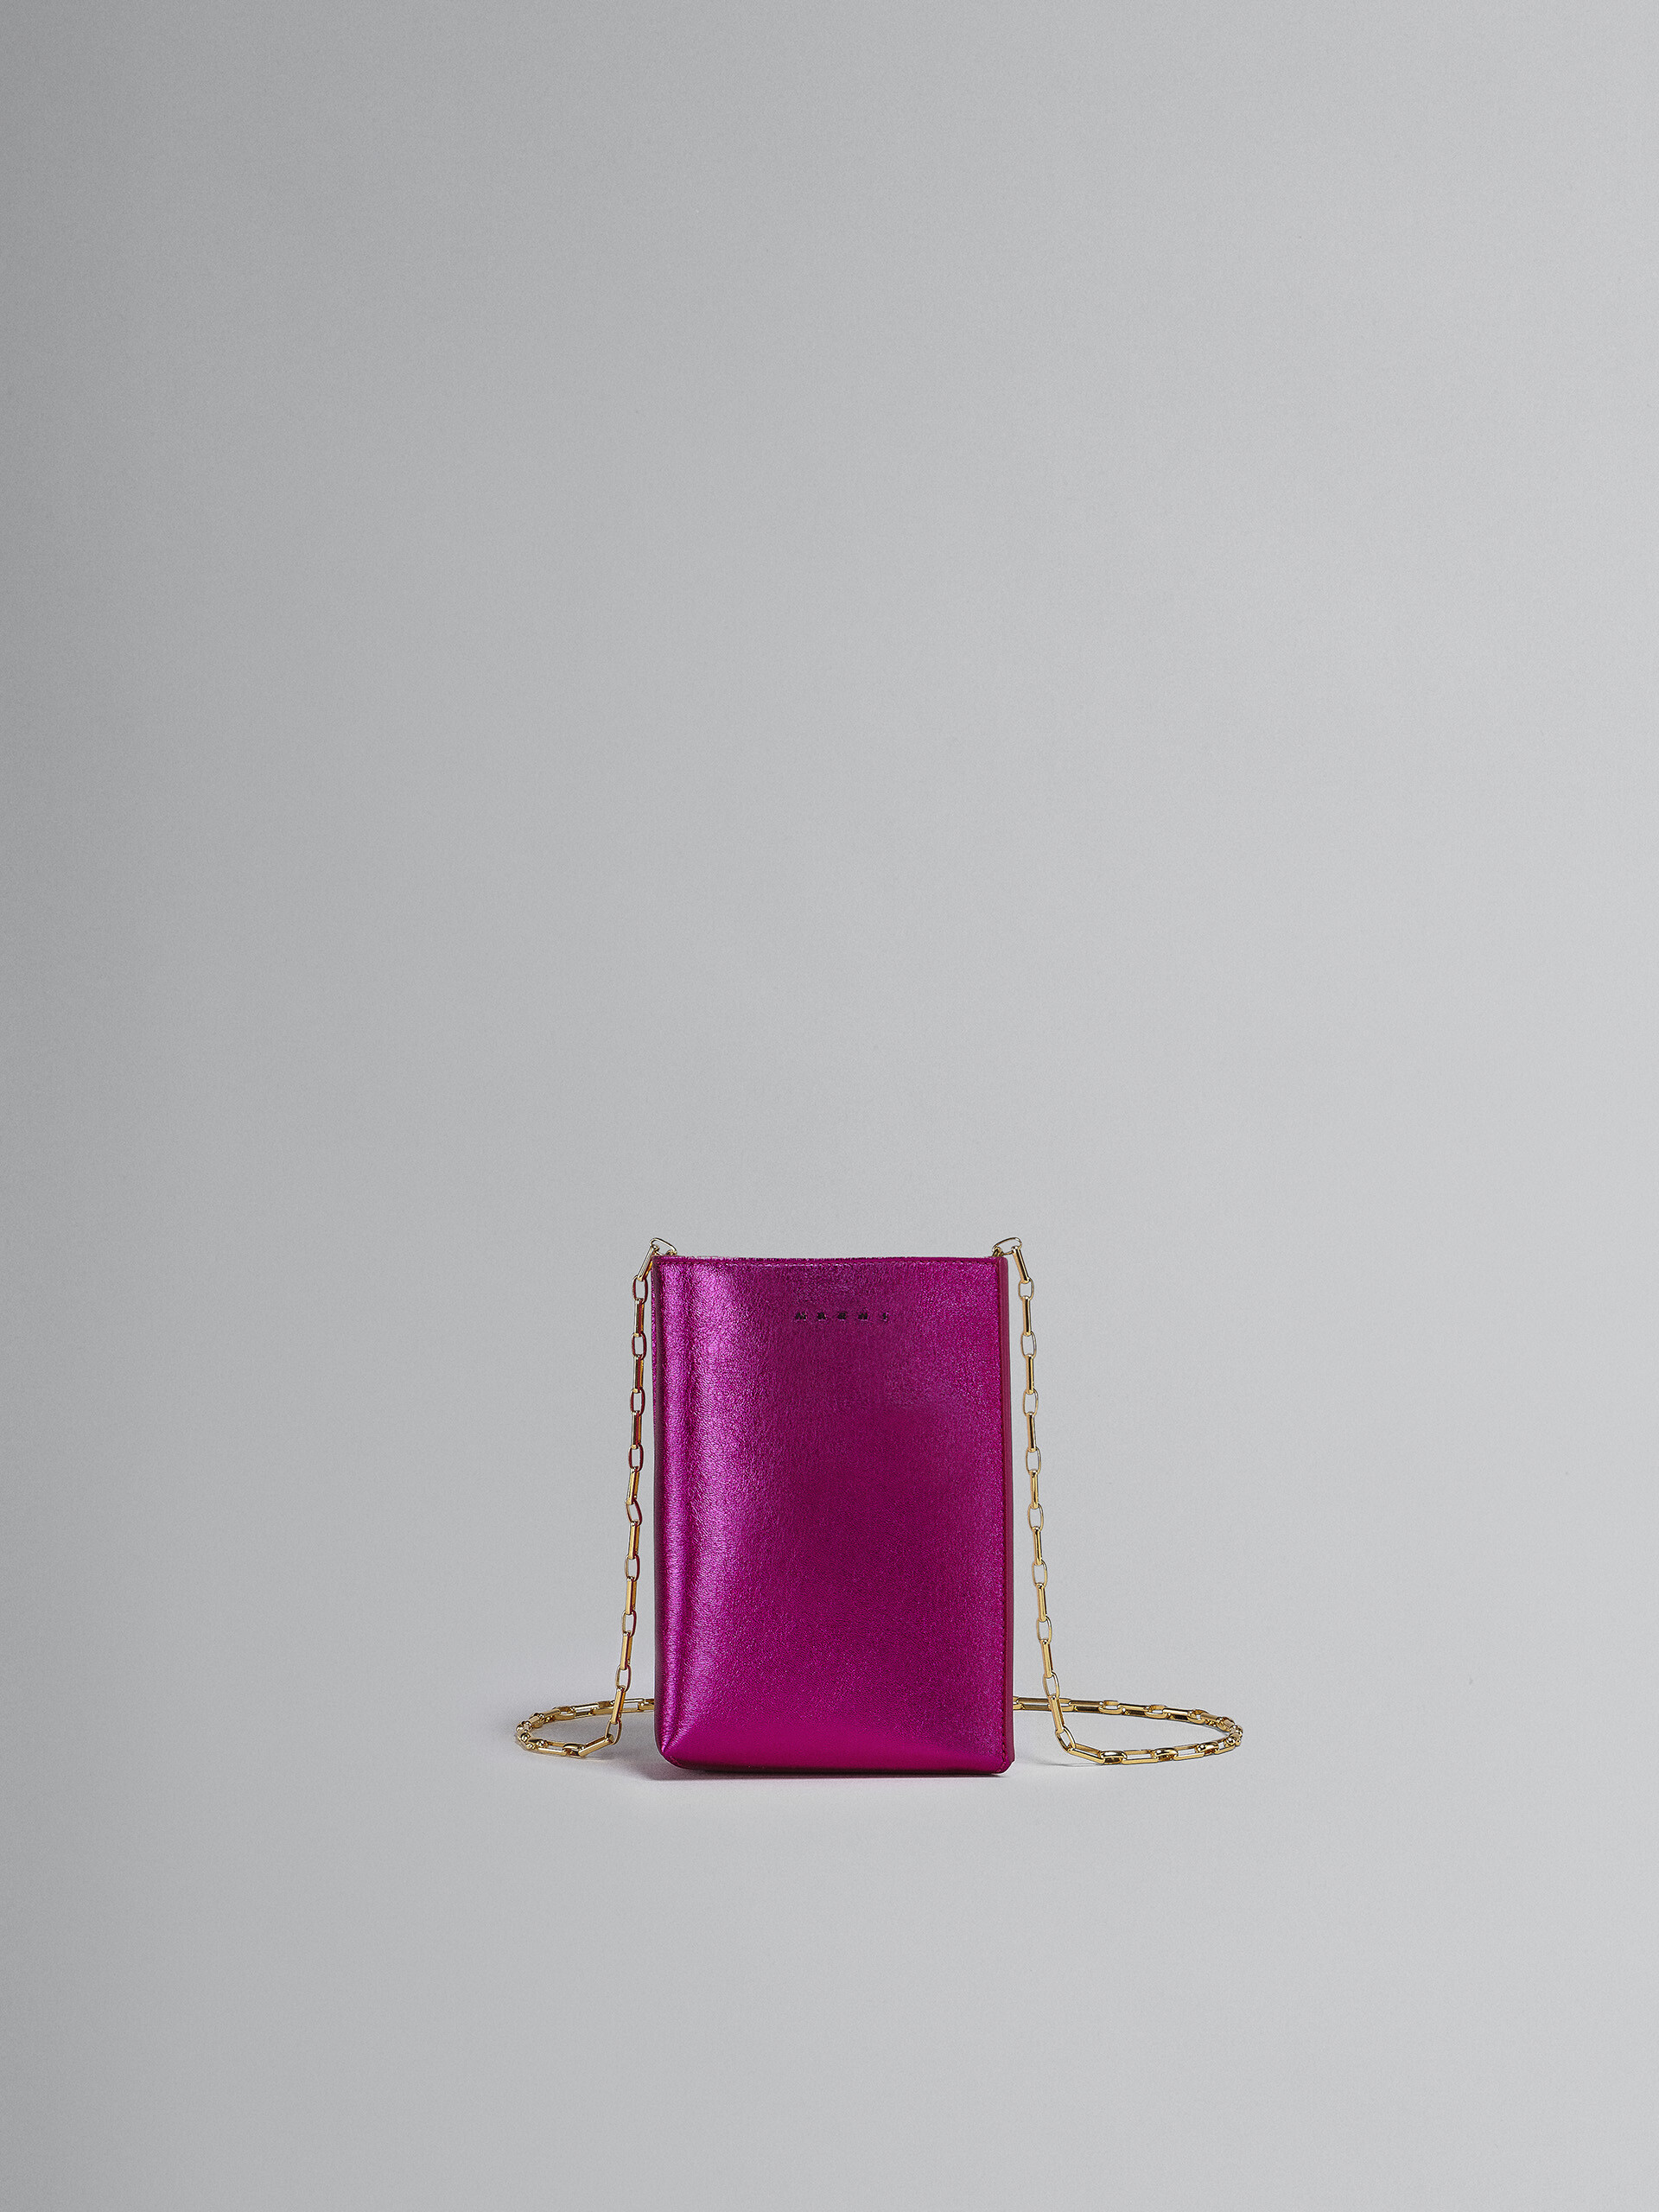 MUSEO SOFT Tasche aus Metallic-Leder in Fuchsia und Rosa - Schultertaschen - Image 1